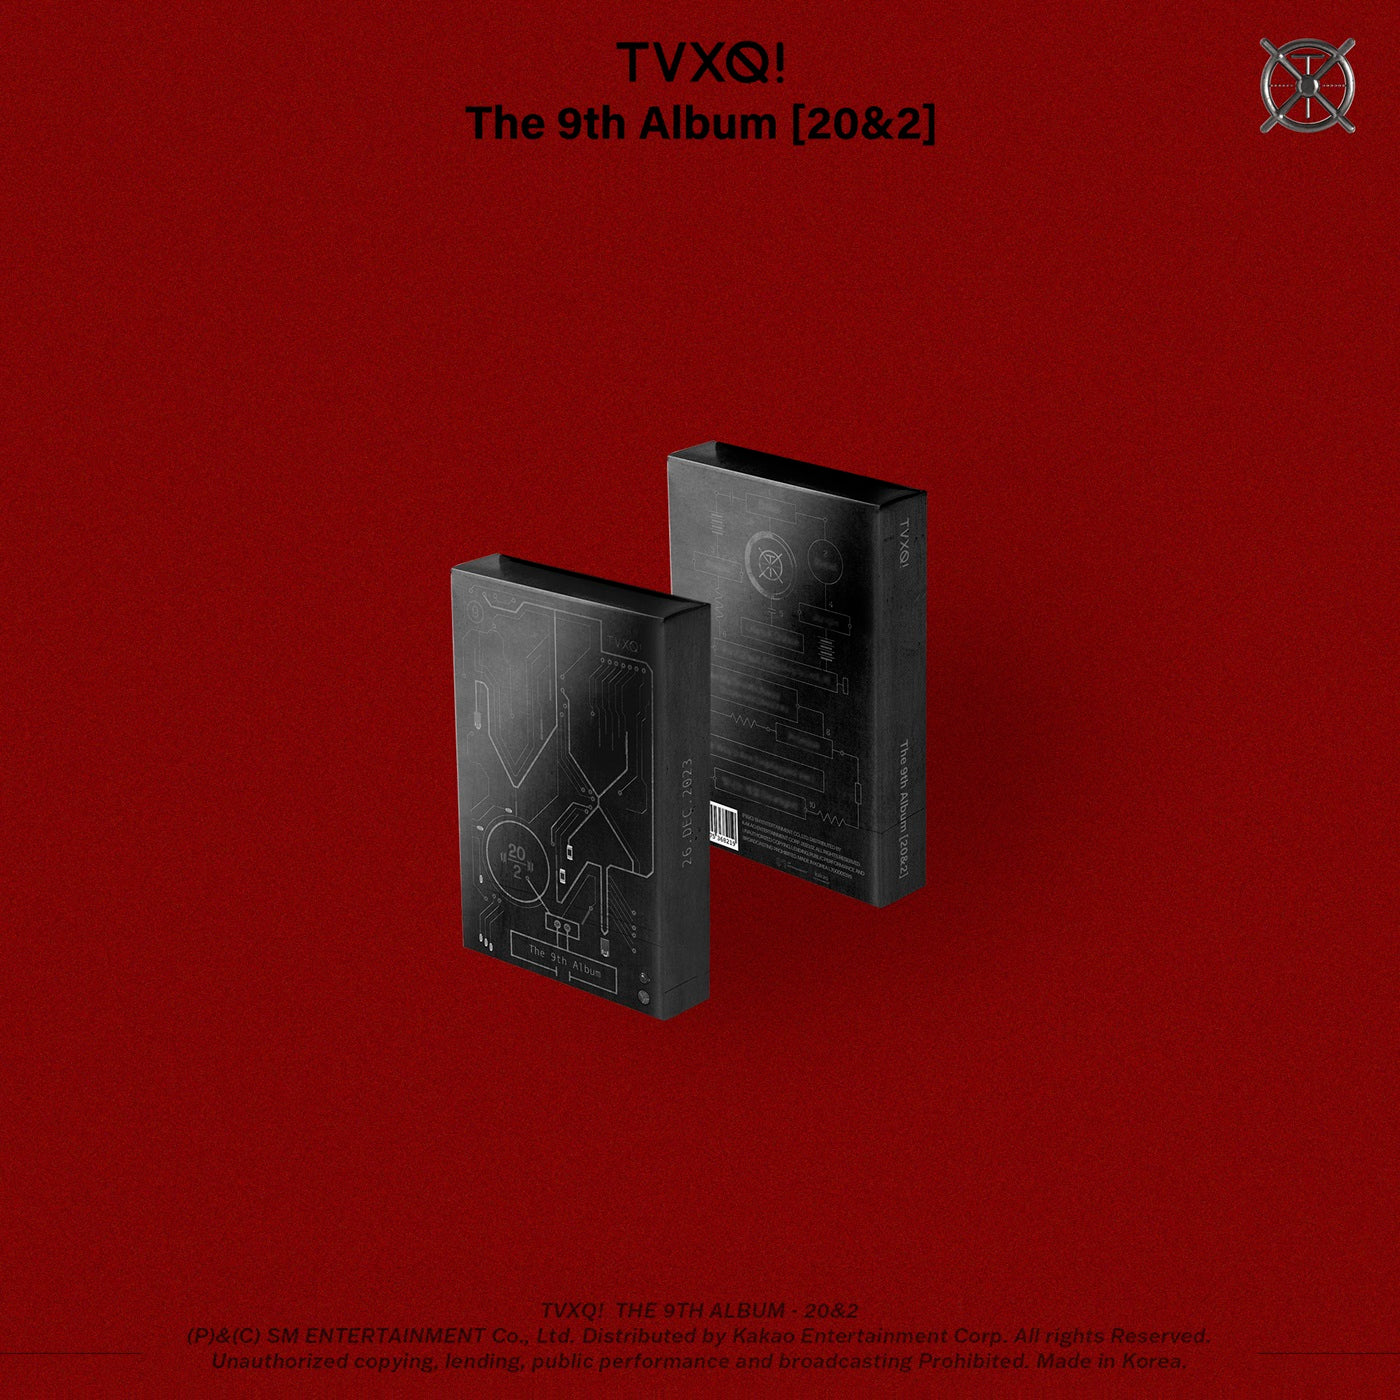 TVXQ 9TH ALBUM '20&2' (CIRCUIT) COVER